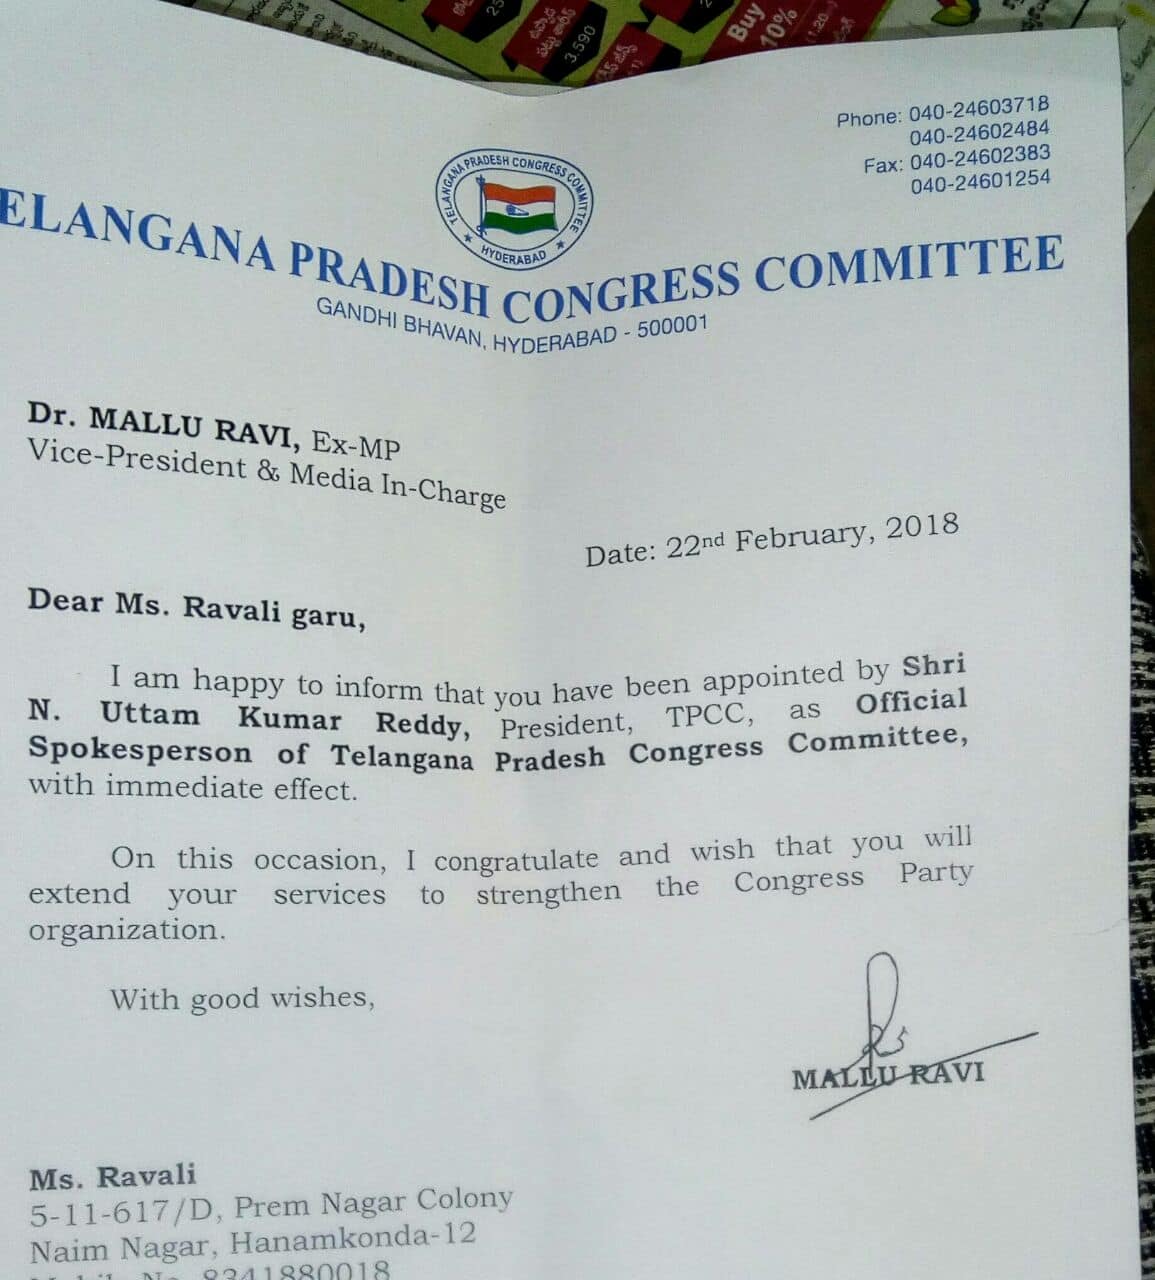 ravali kuchana appointed as pcc spokesperson